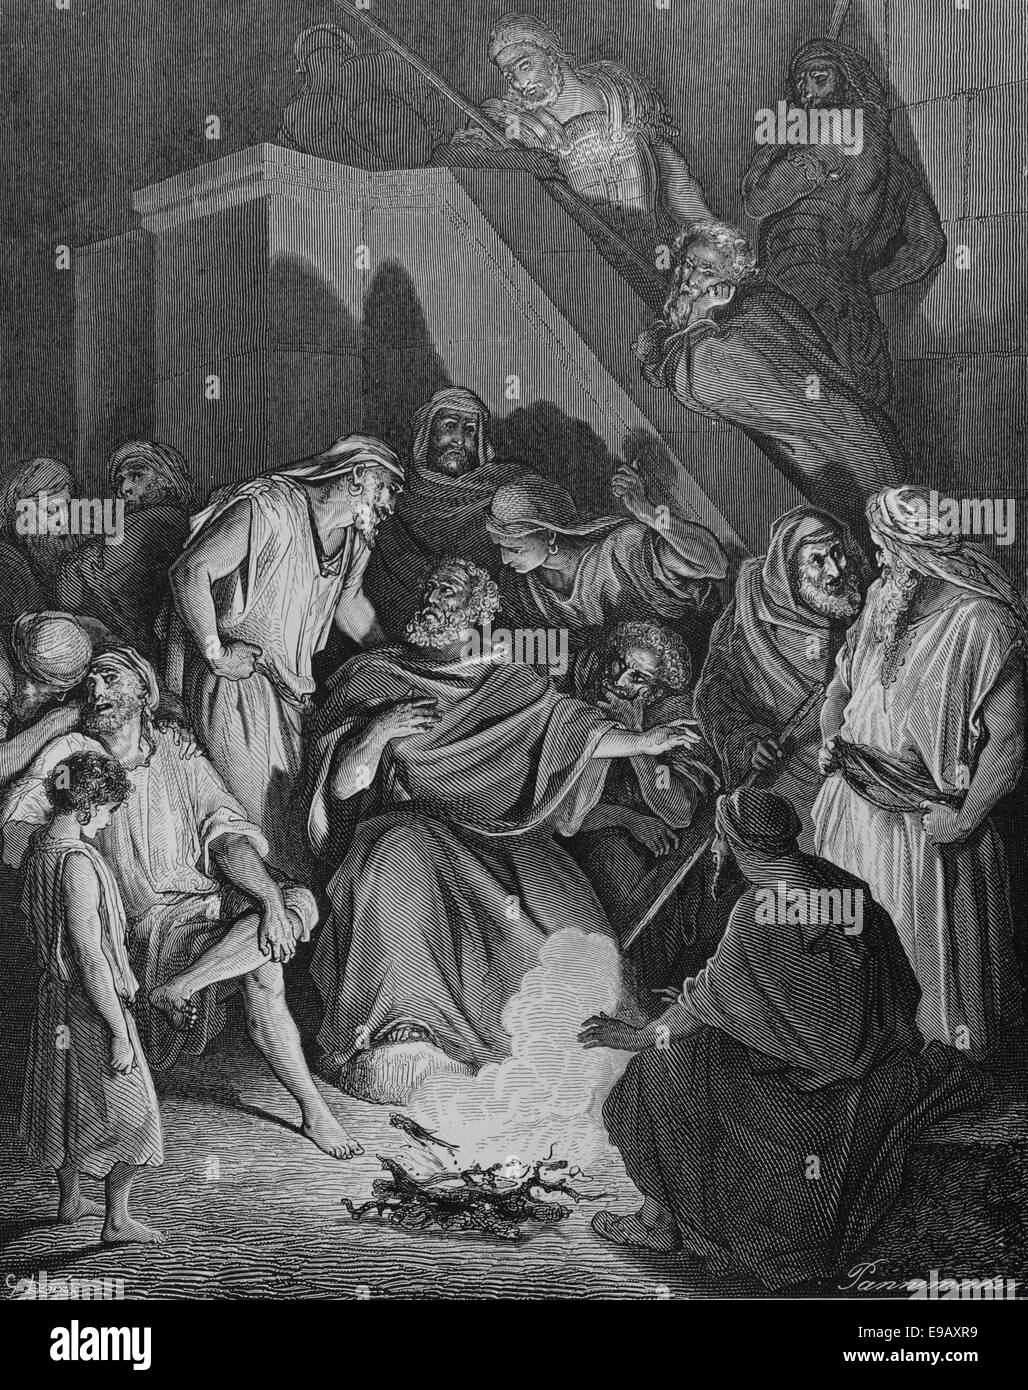 Biblia ilustrada. Nuevo Testamento. San Pedro negando a Cristo. Dibujo de Gustave Doré (1832-1883). Siglo xix. Grabado. Foto de stock